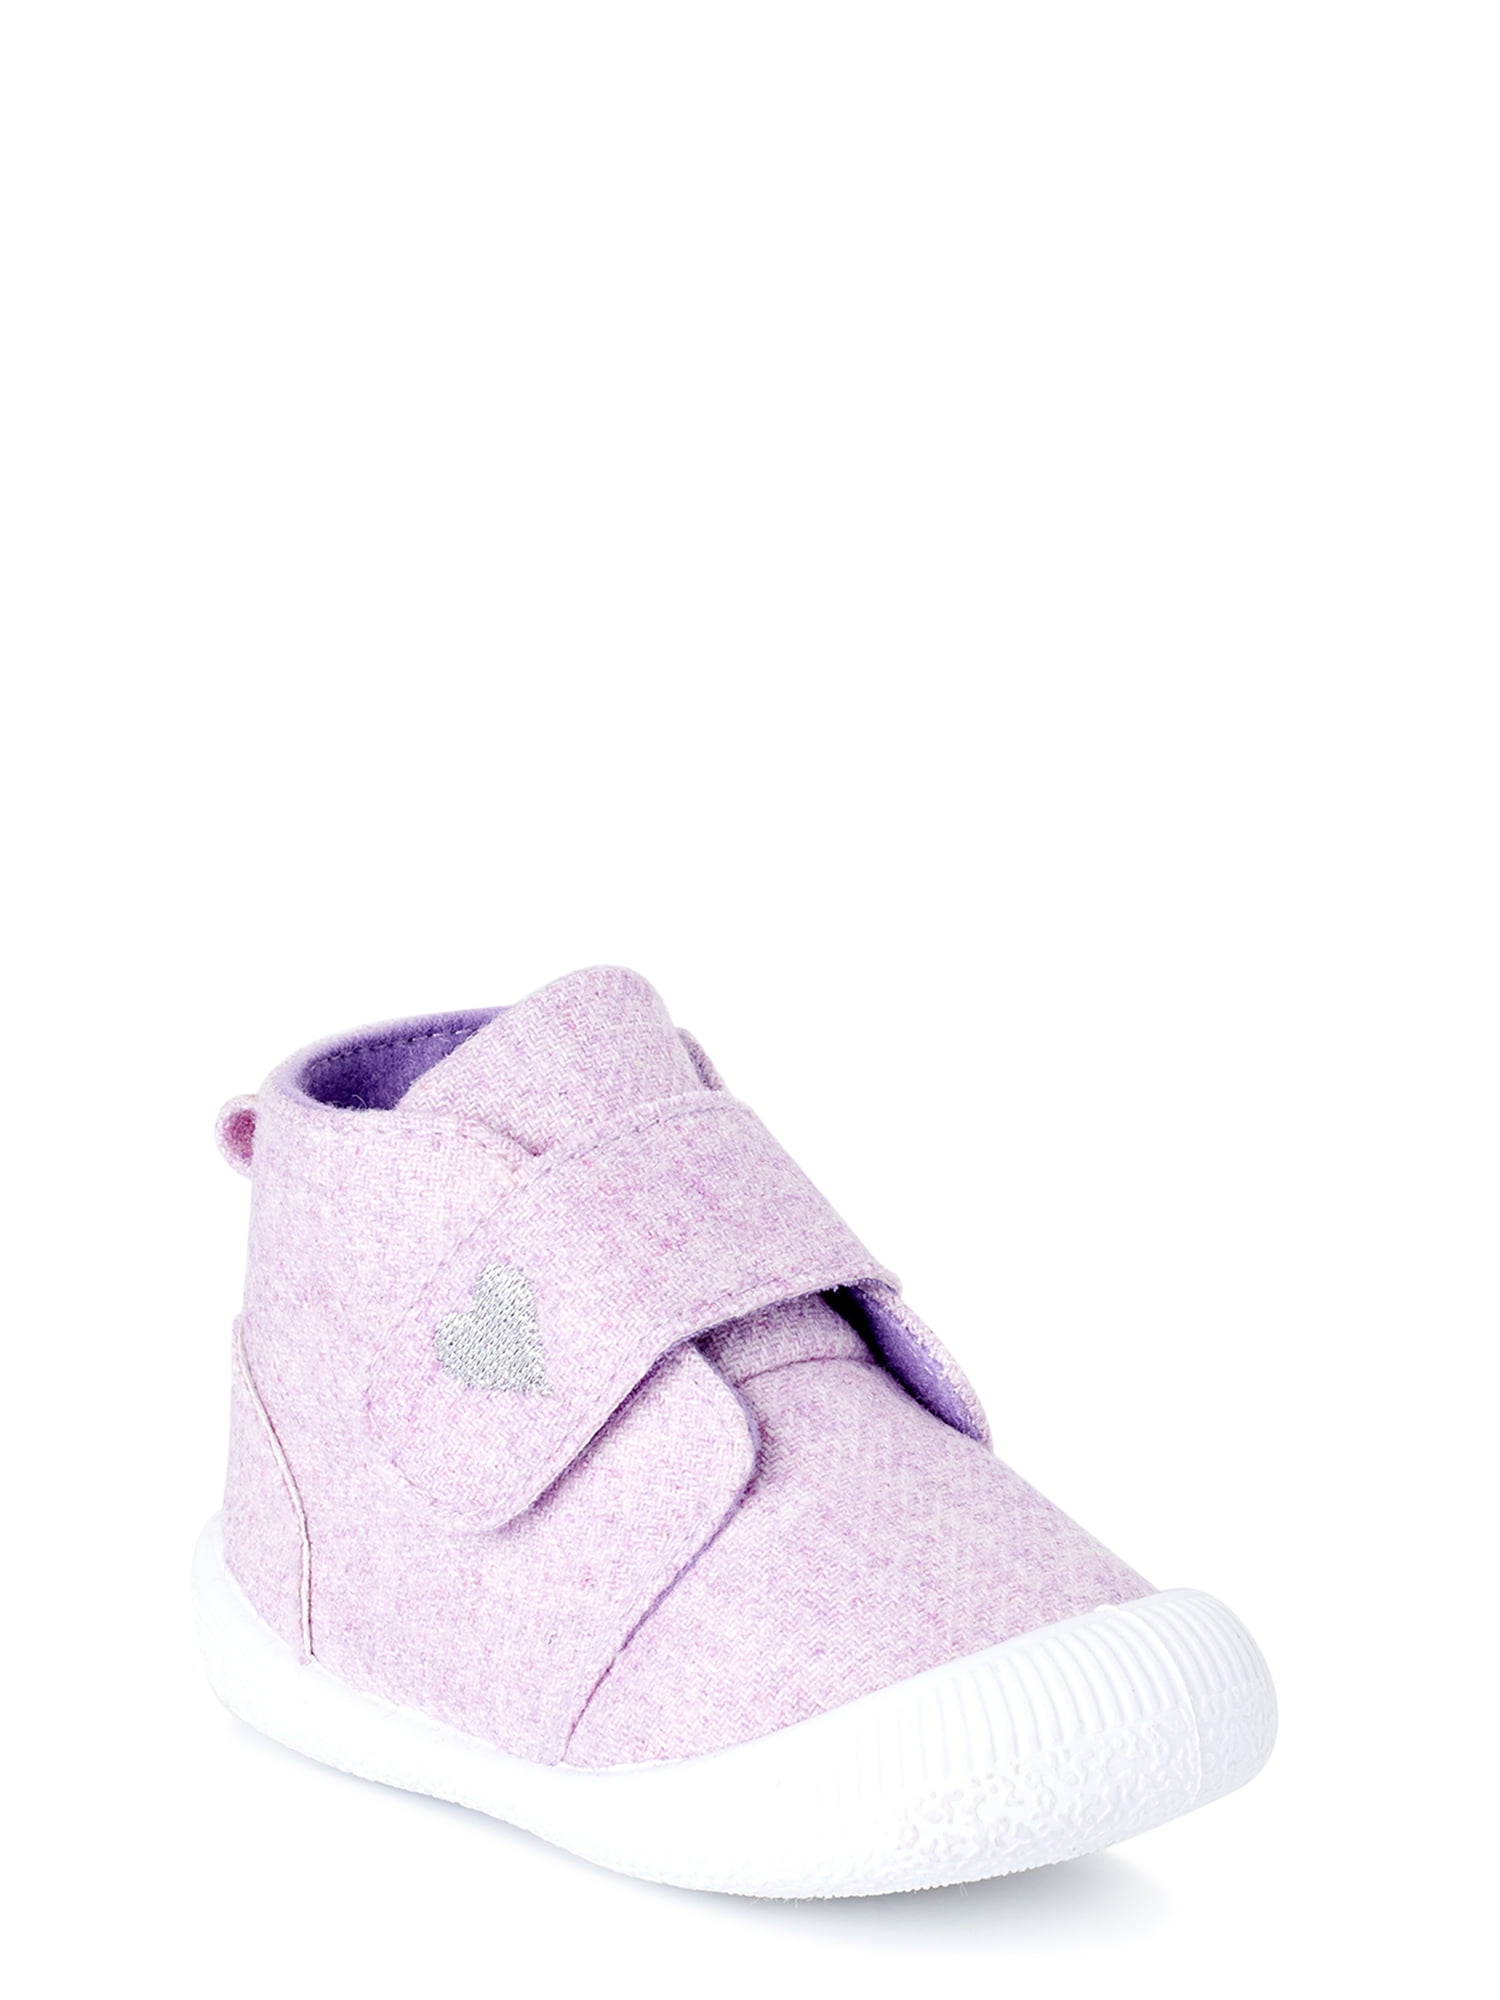 infant purple shoes